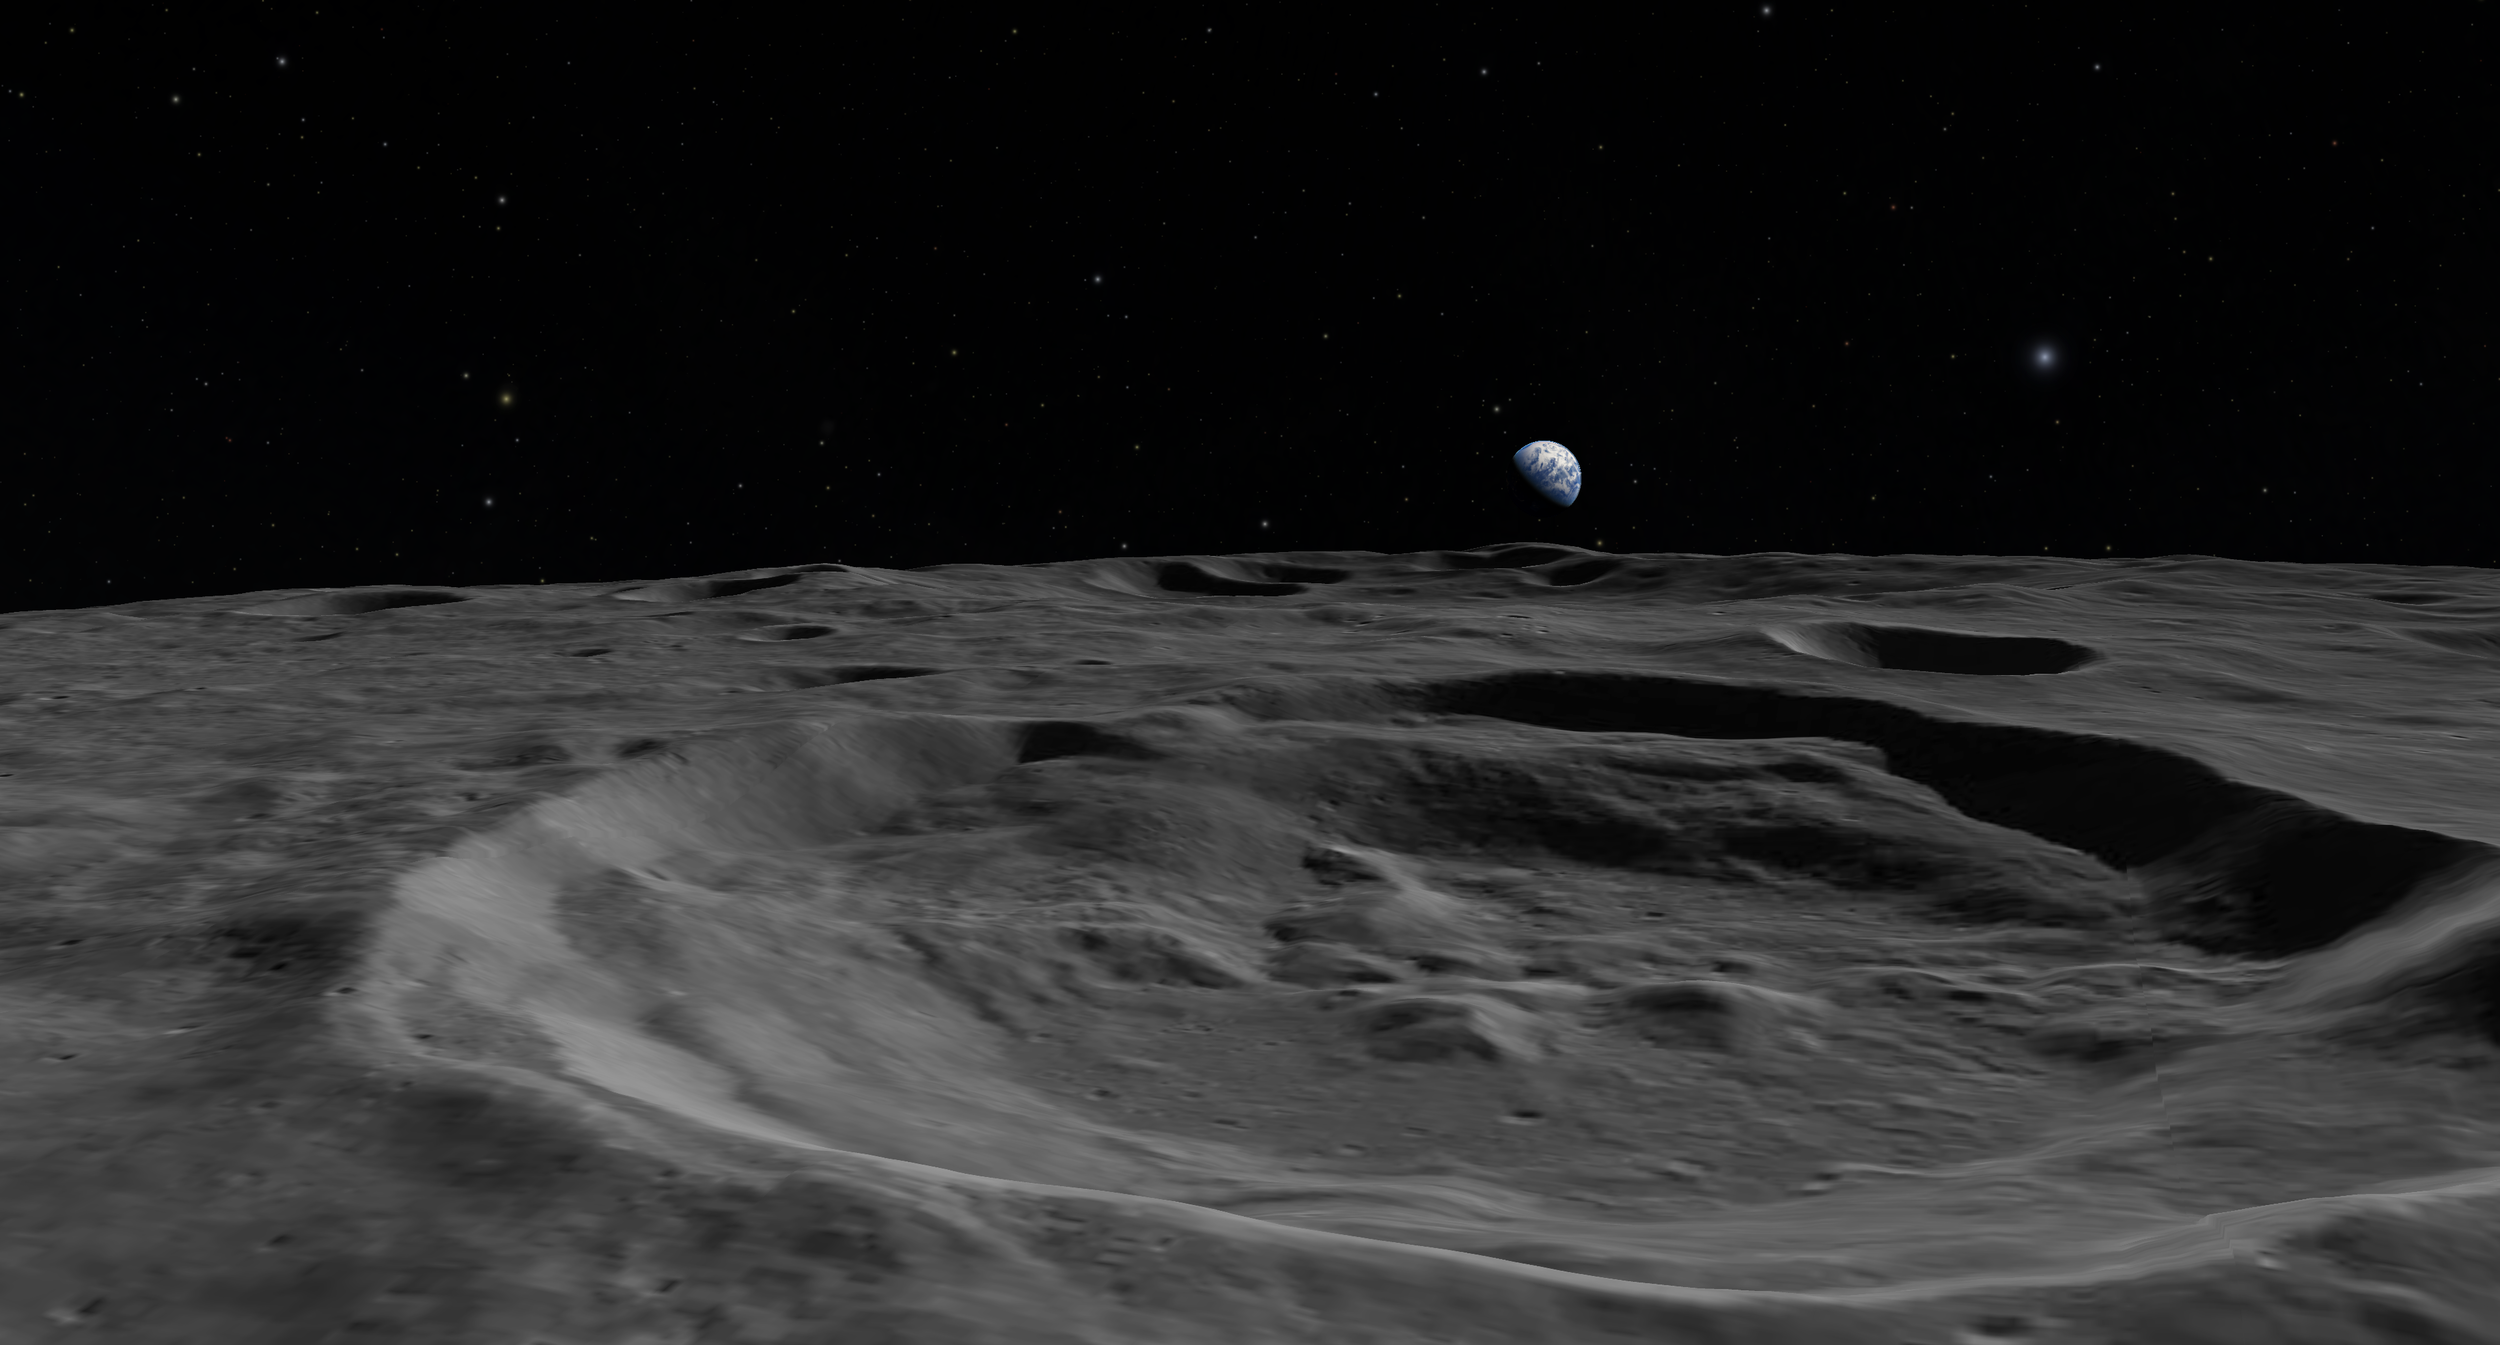 Månens yta och jorden i bakgrunden